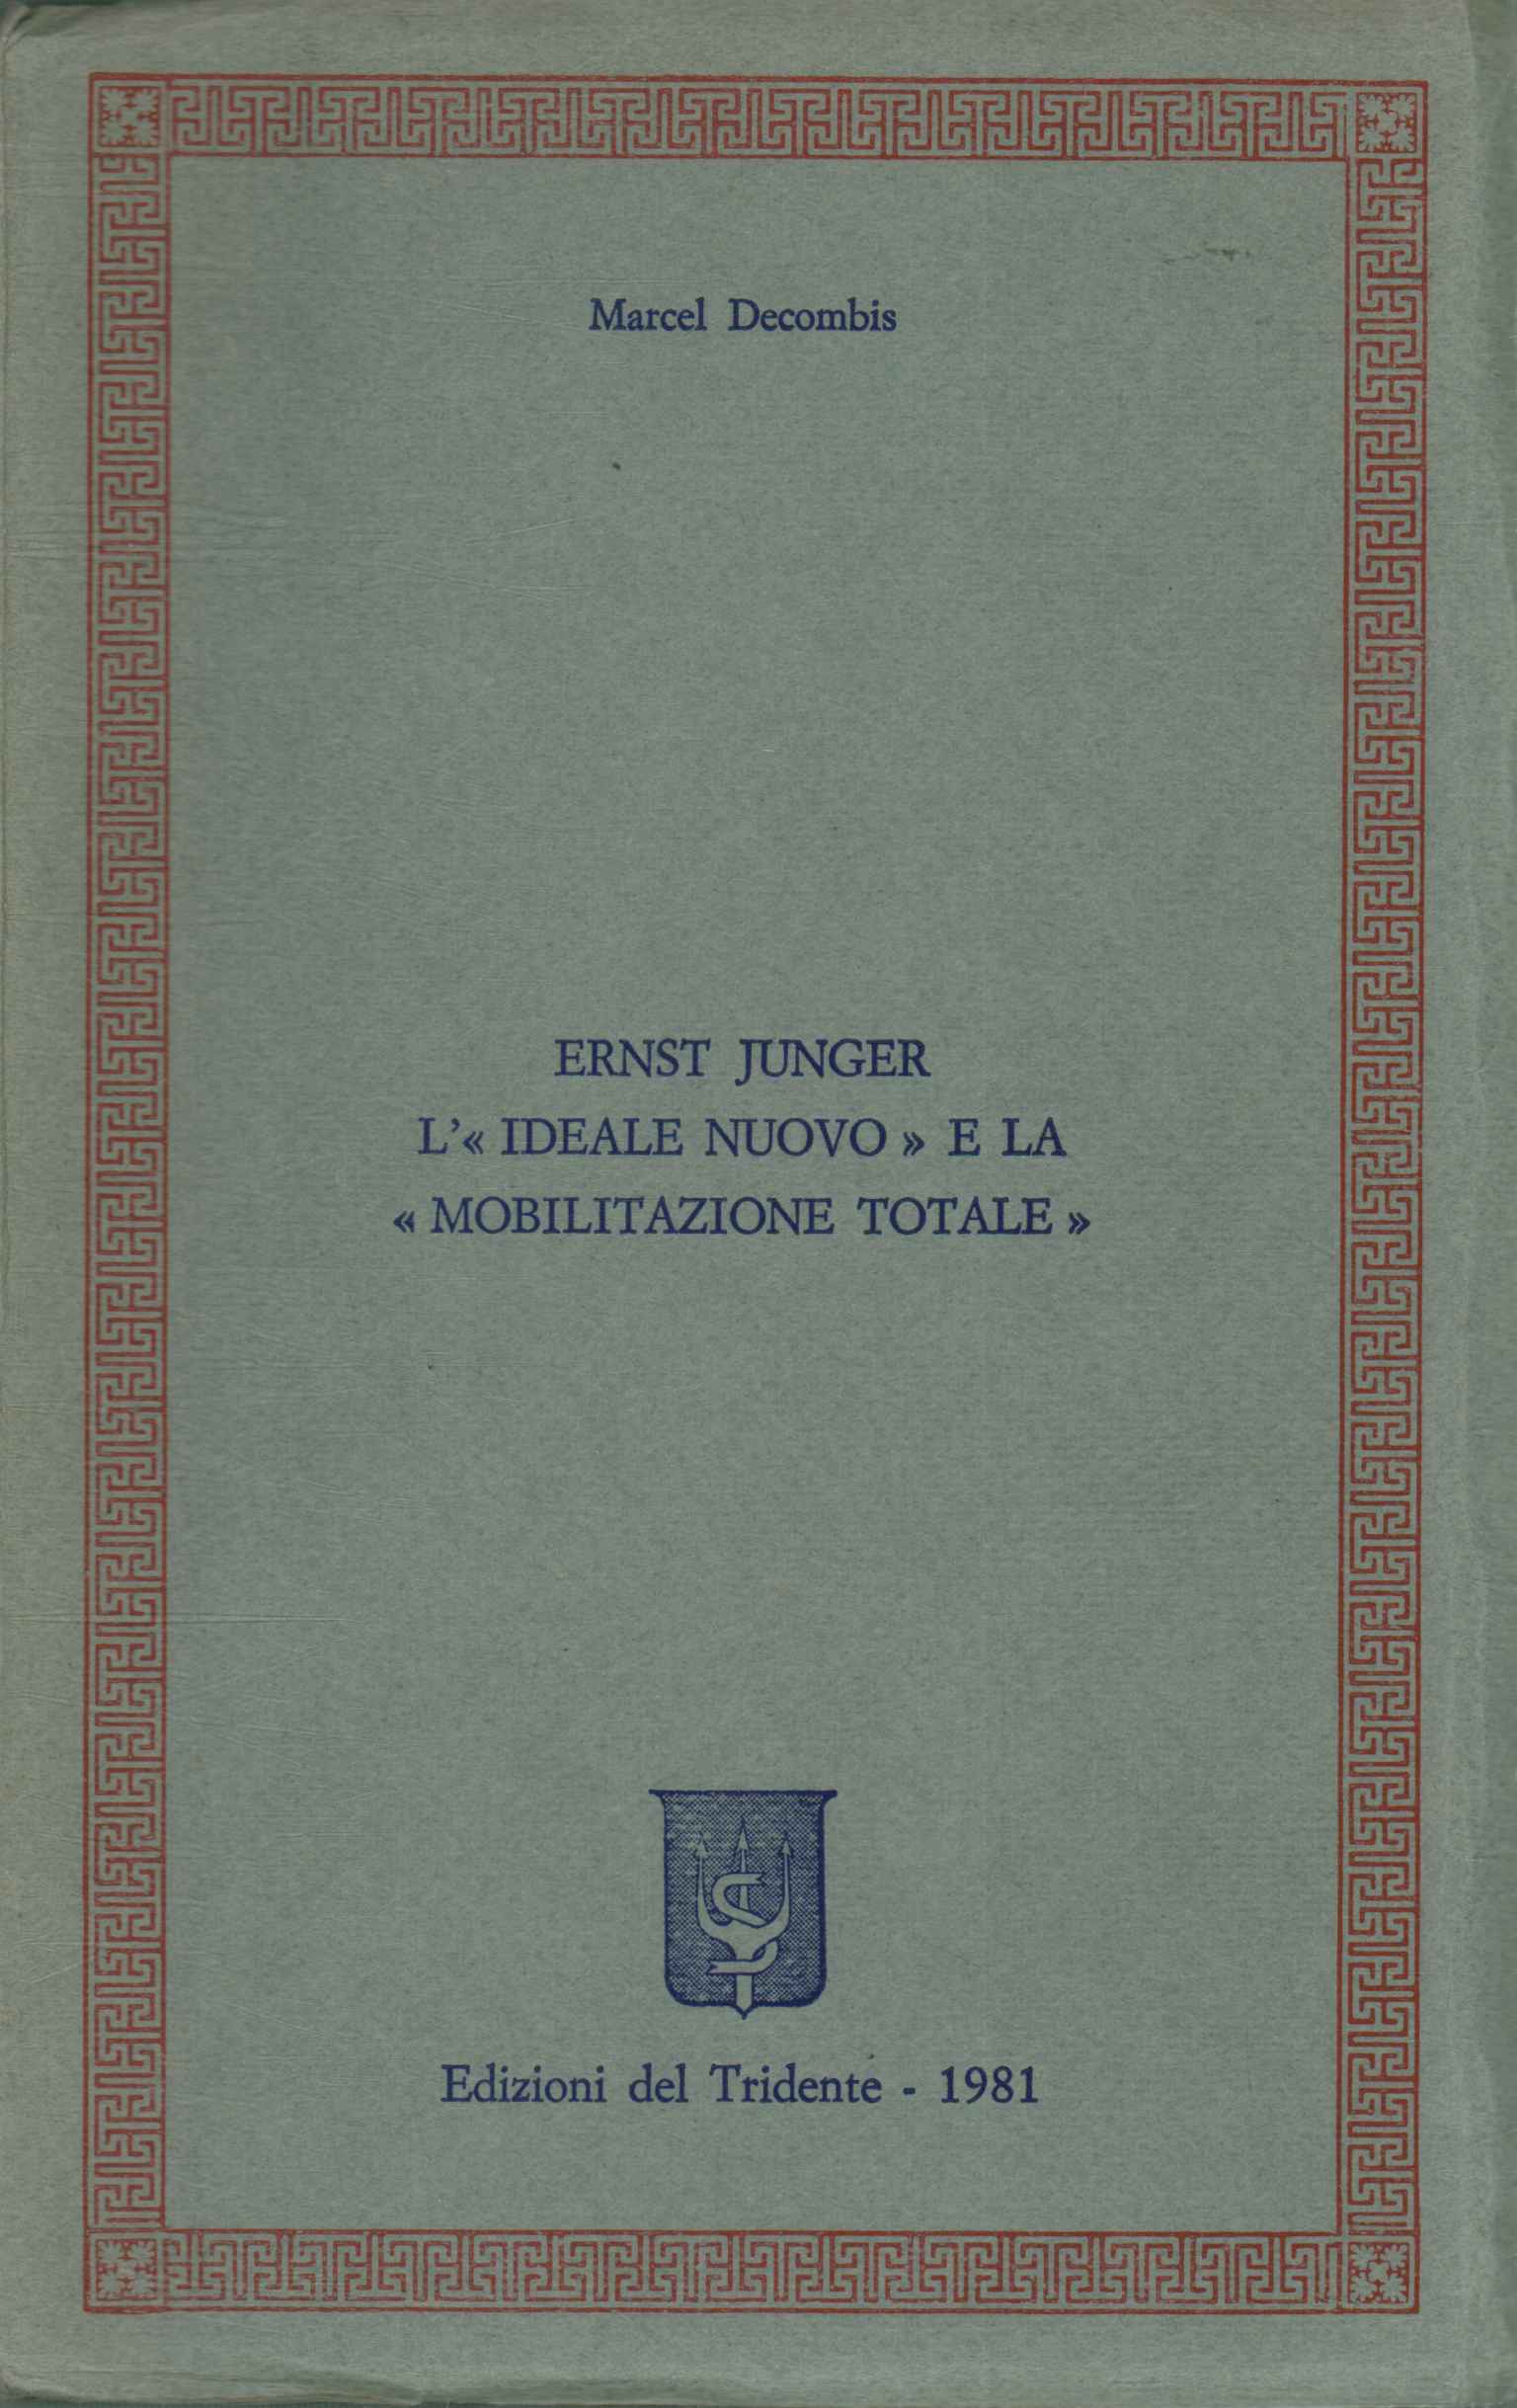 Ernst Junger. The nu ideal